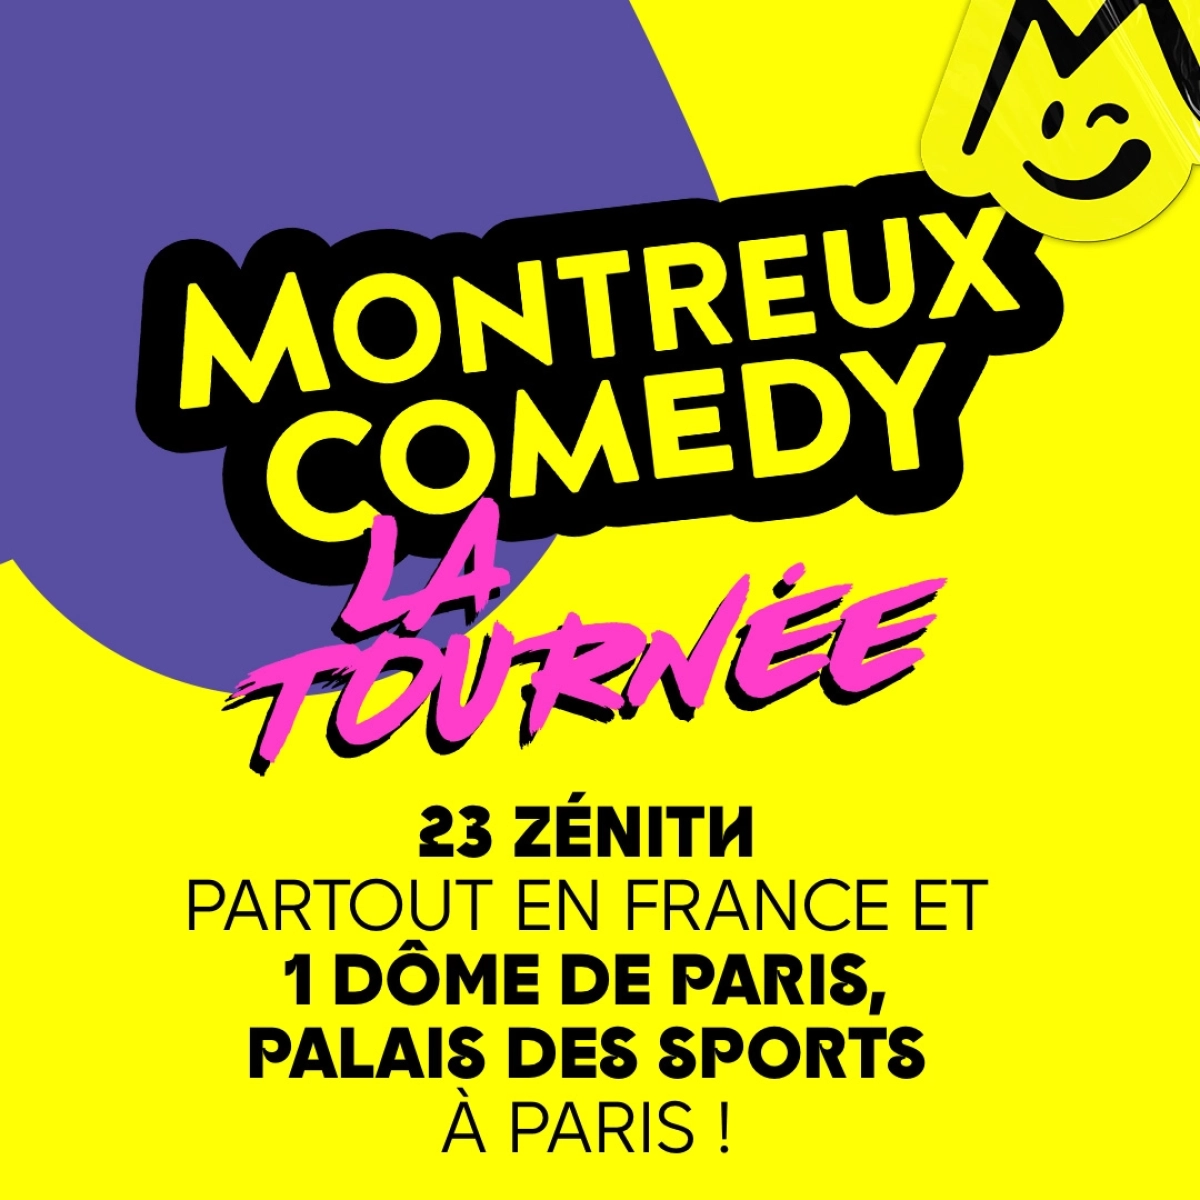 Montreux Comedy - La Tournee in der Zenith Strasbourg Tickets